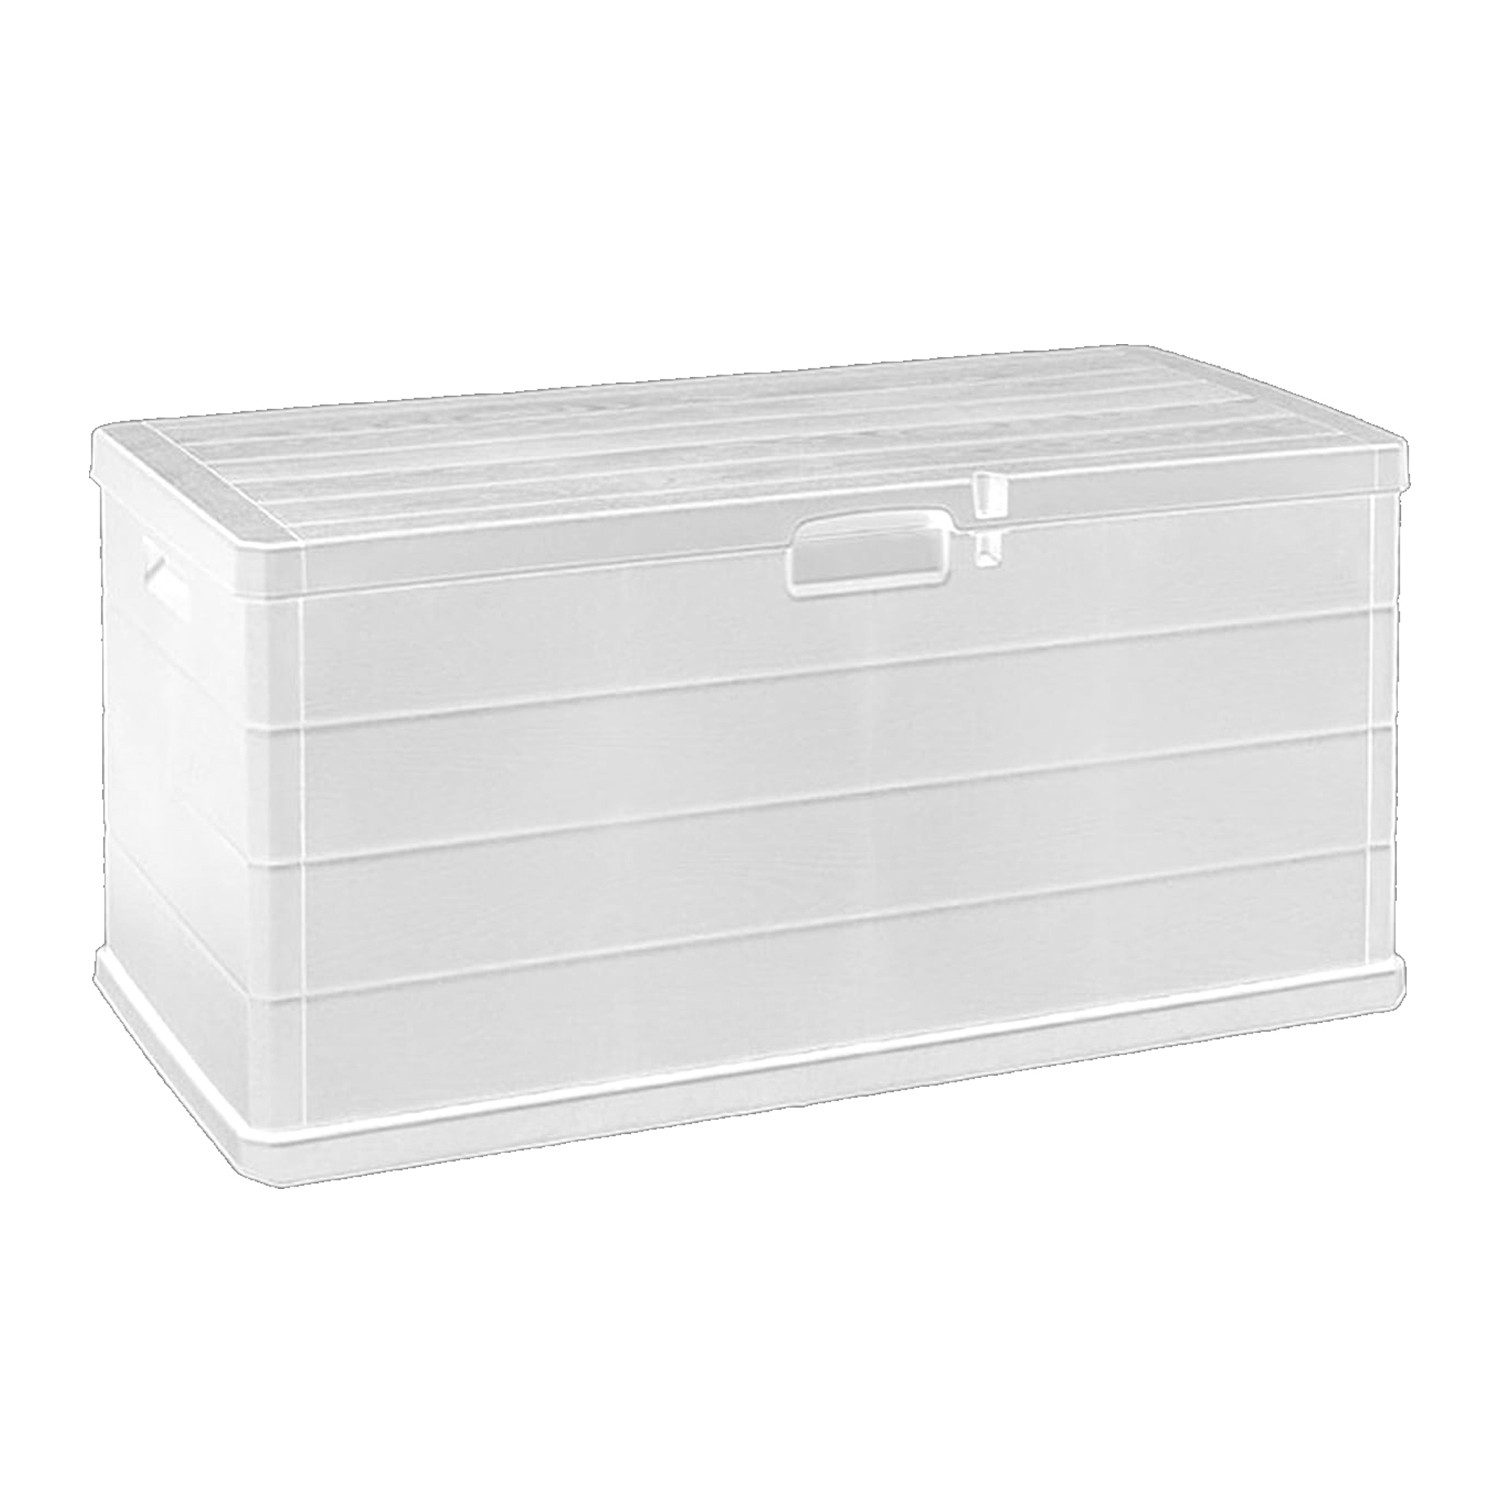 Mojawo Auflagenbox XL Auflagenbox Sitzbank 2 Personen Kunststoff Weiß 340L